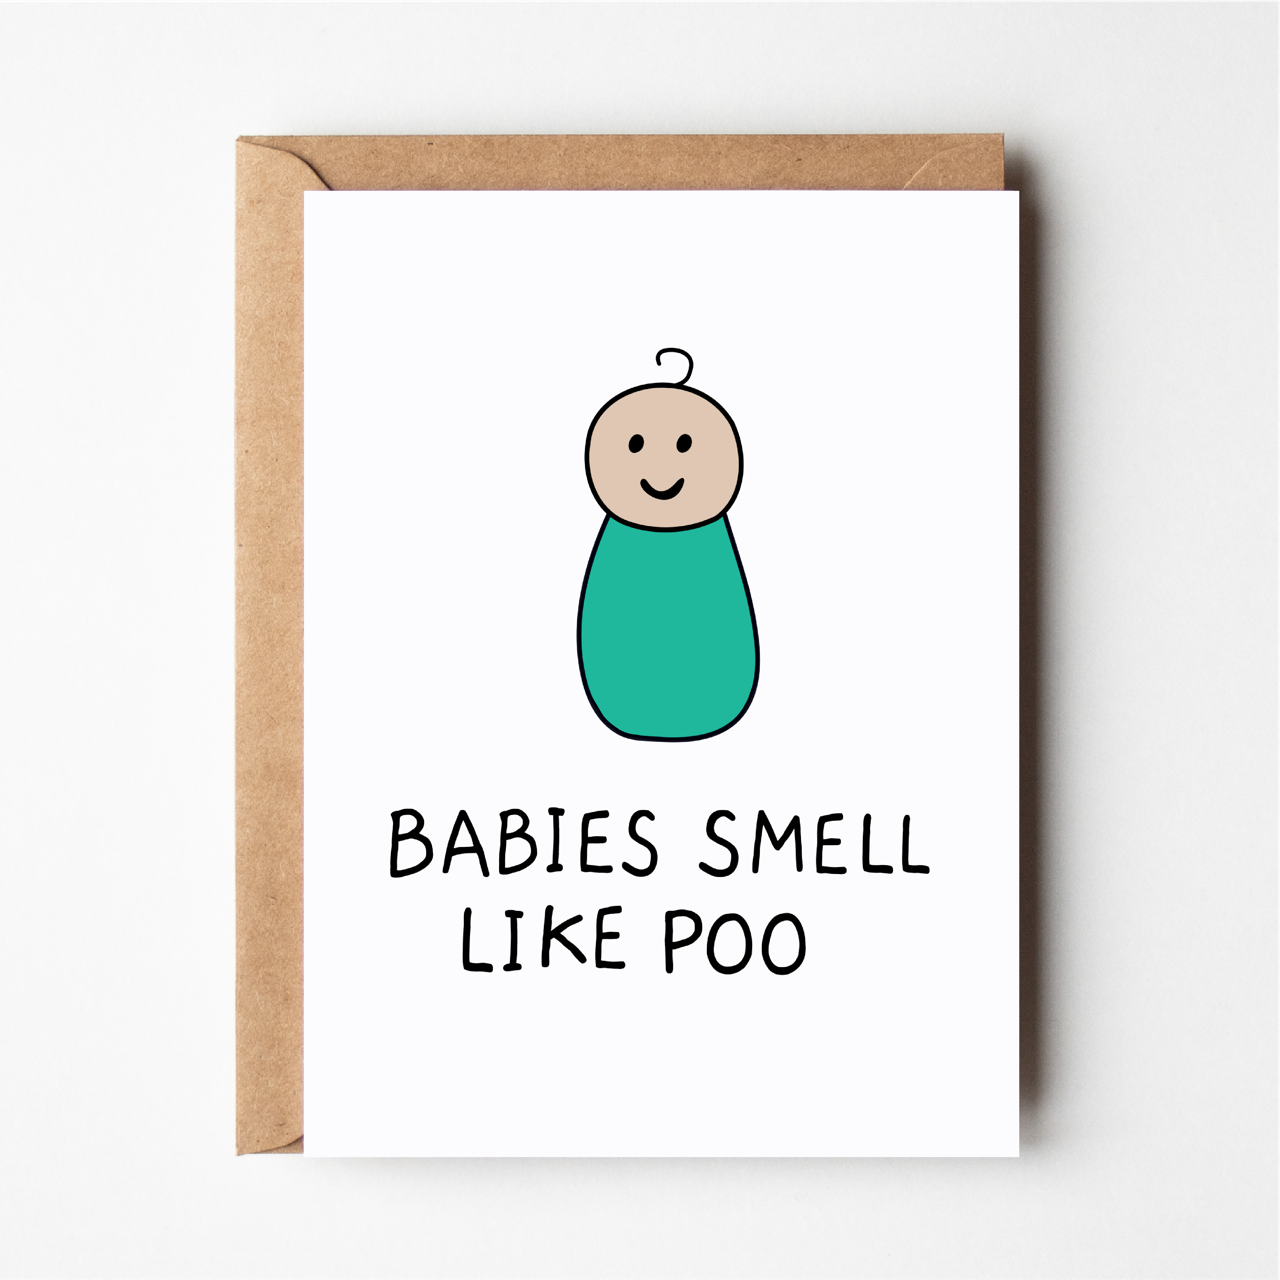 Babies smell like poo